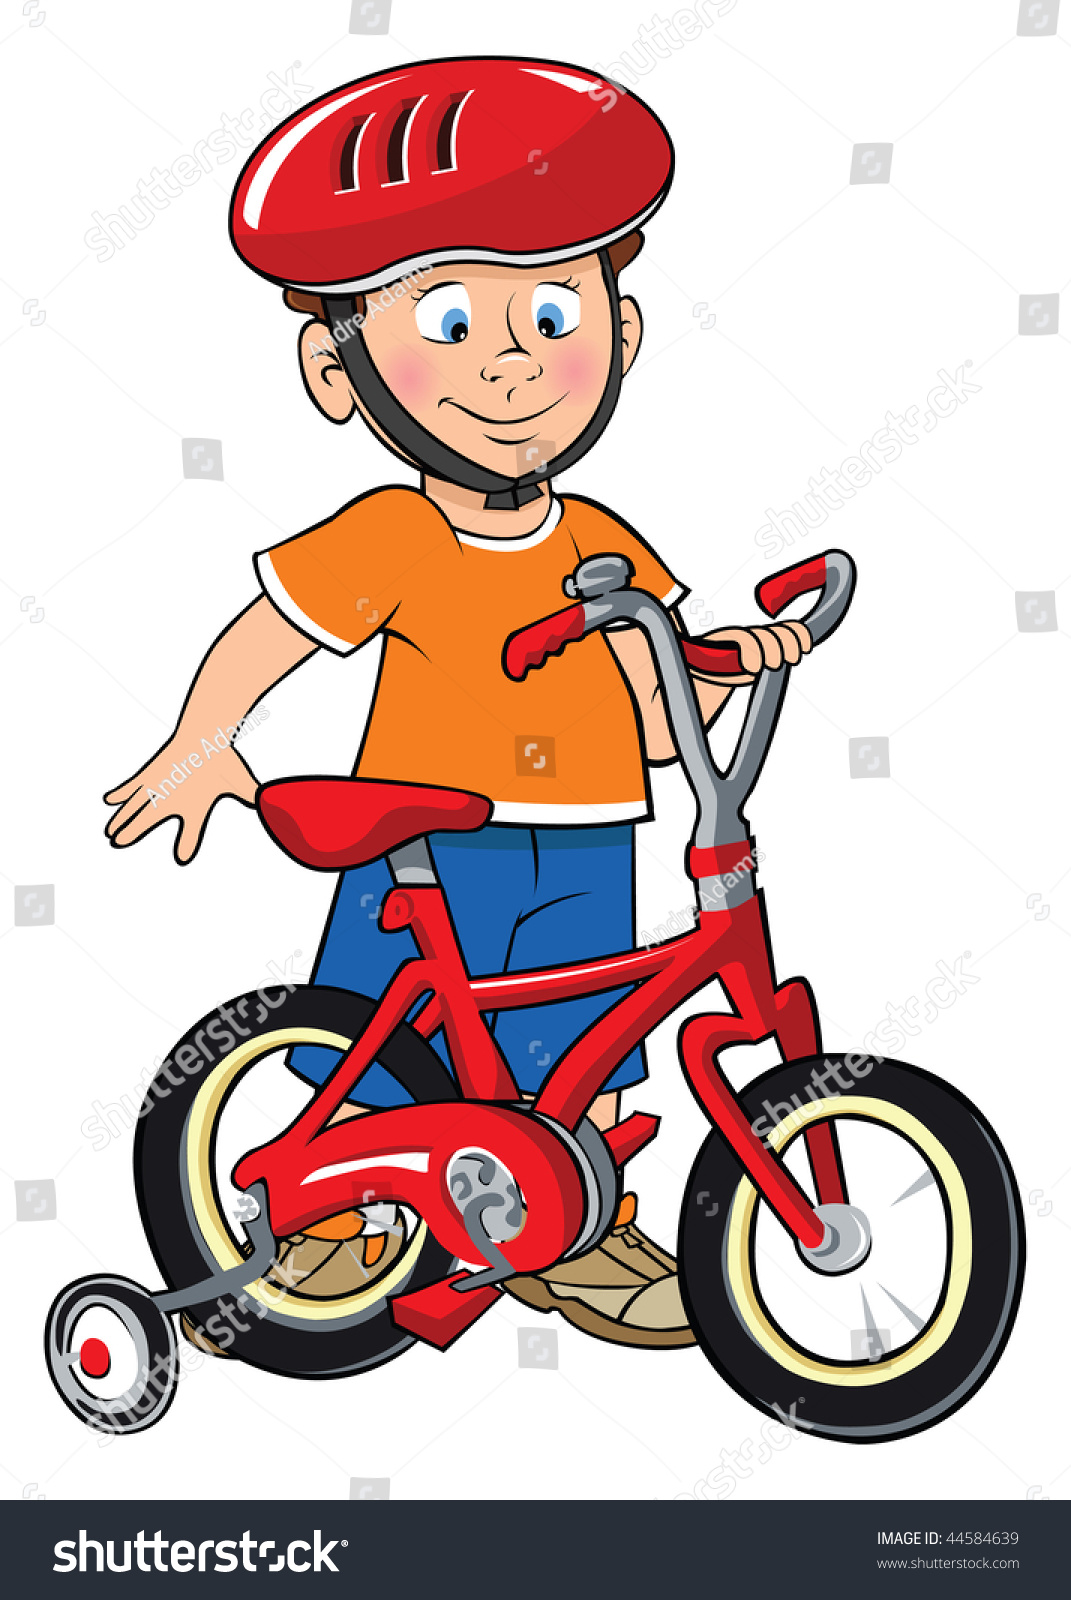 clipart child on bike - photo #17